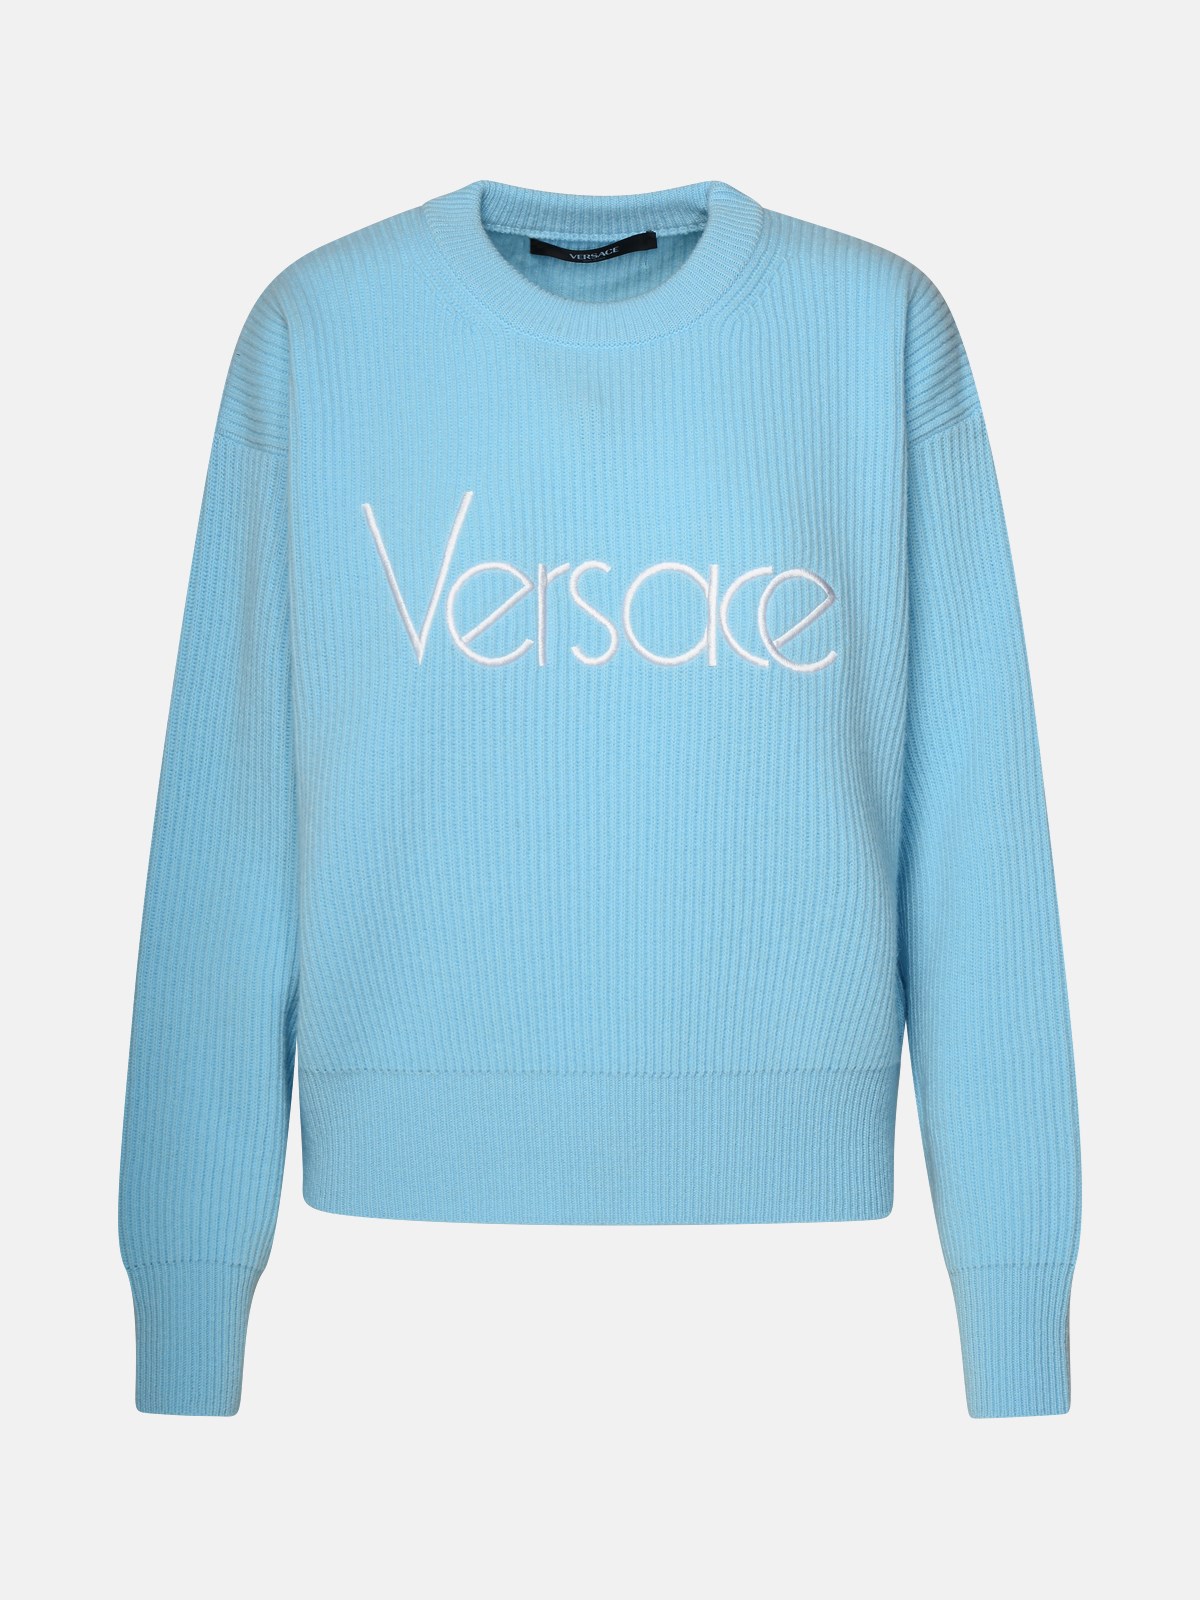 Versace Light Blue Virgin Wool Sweater